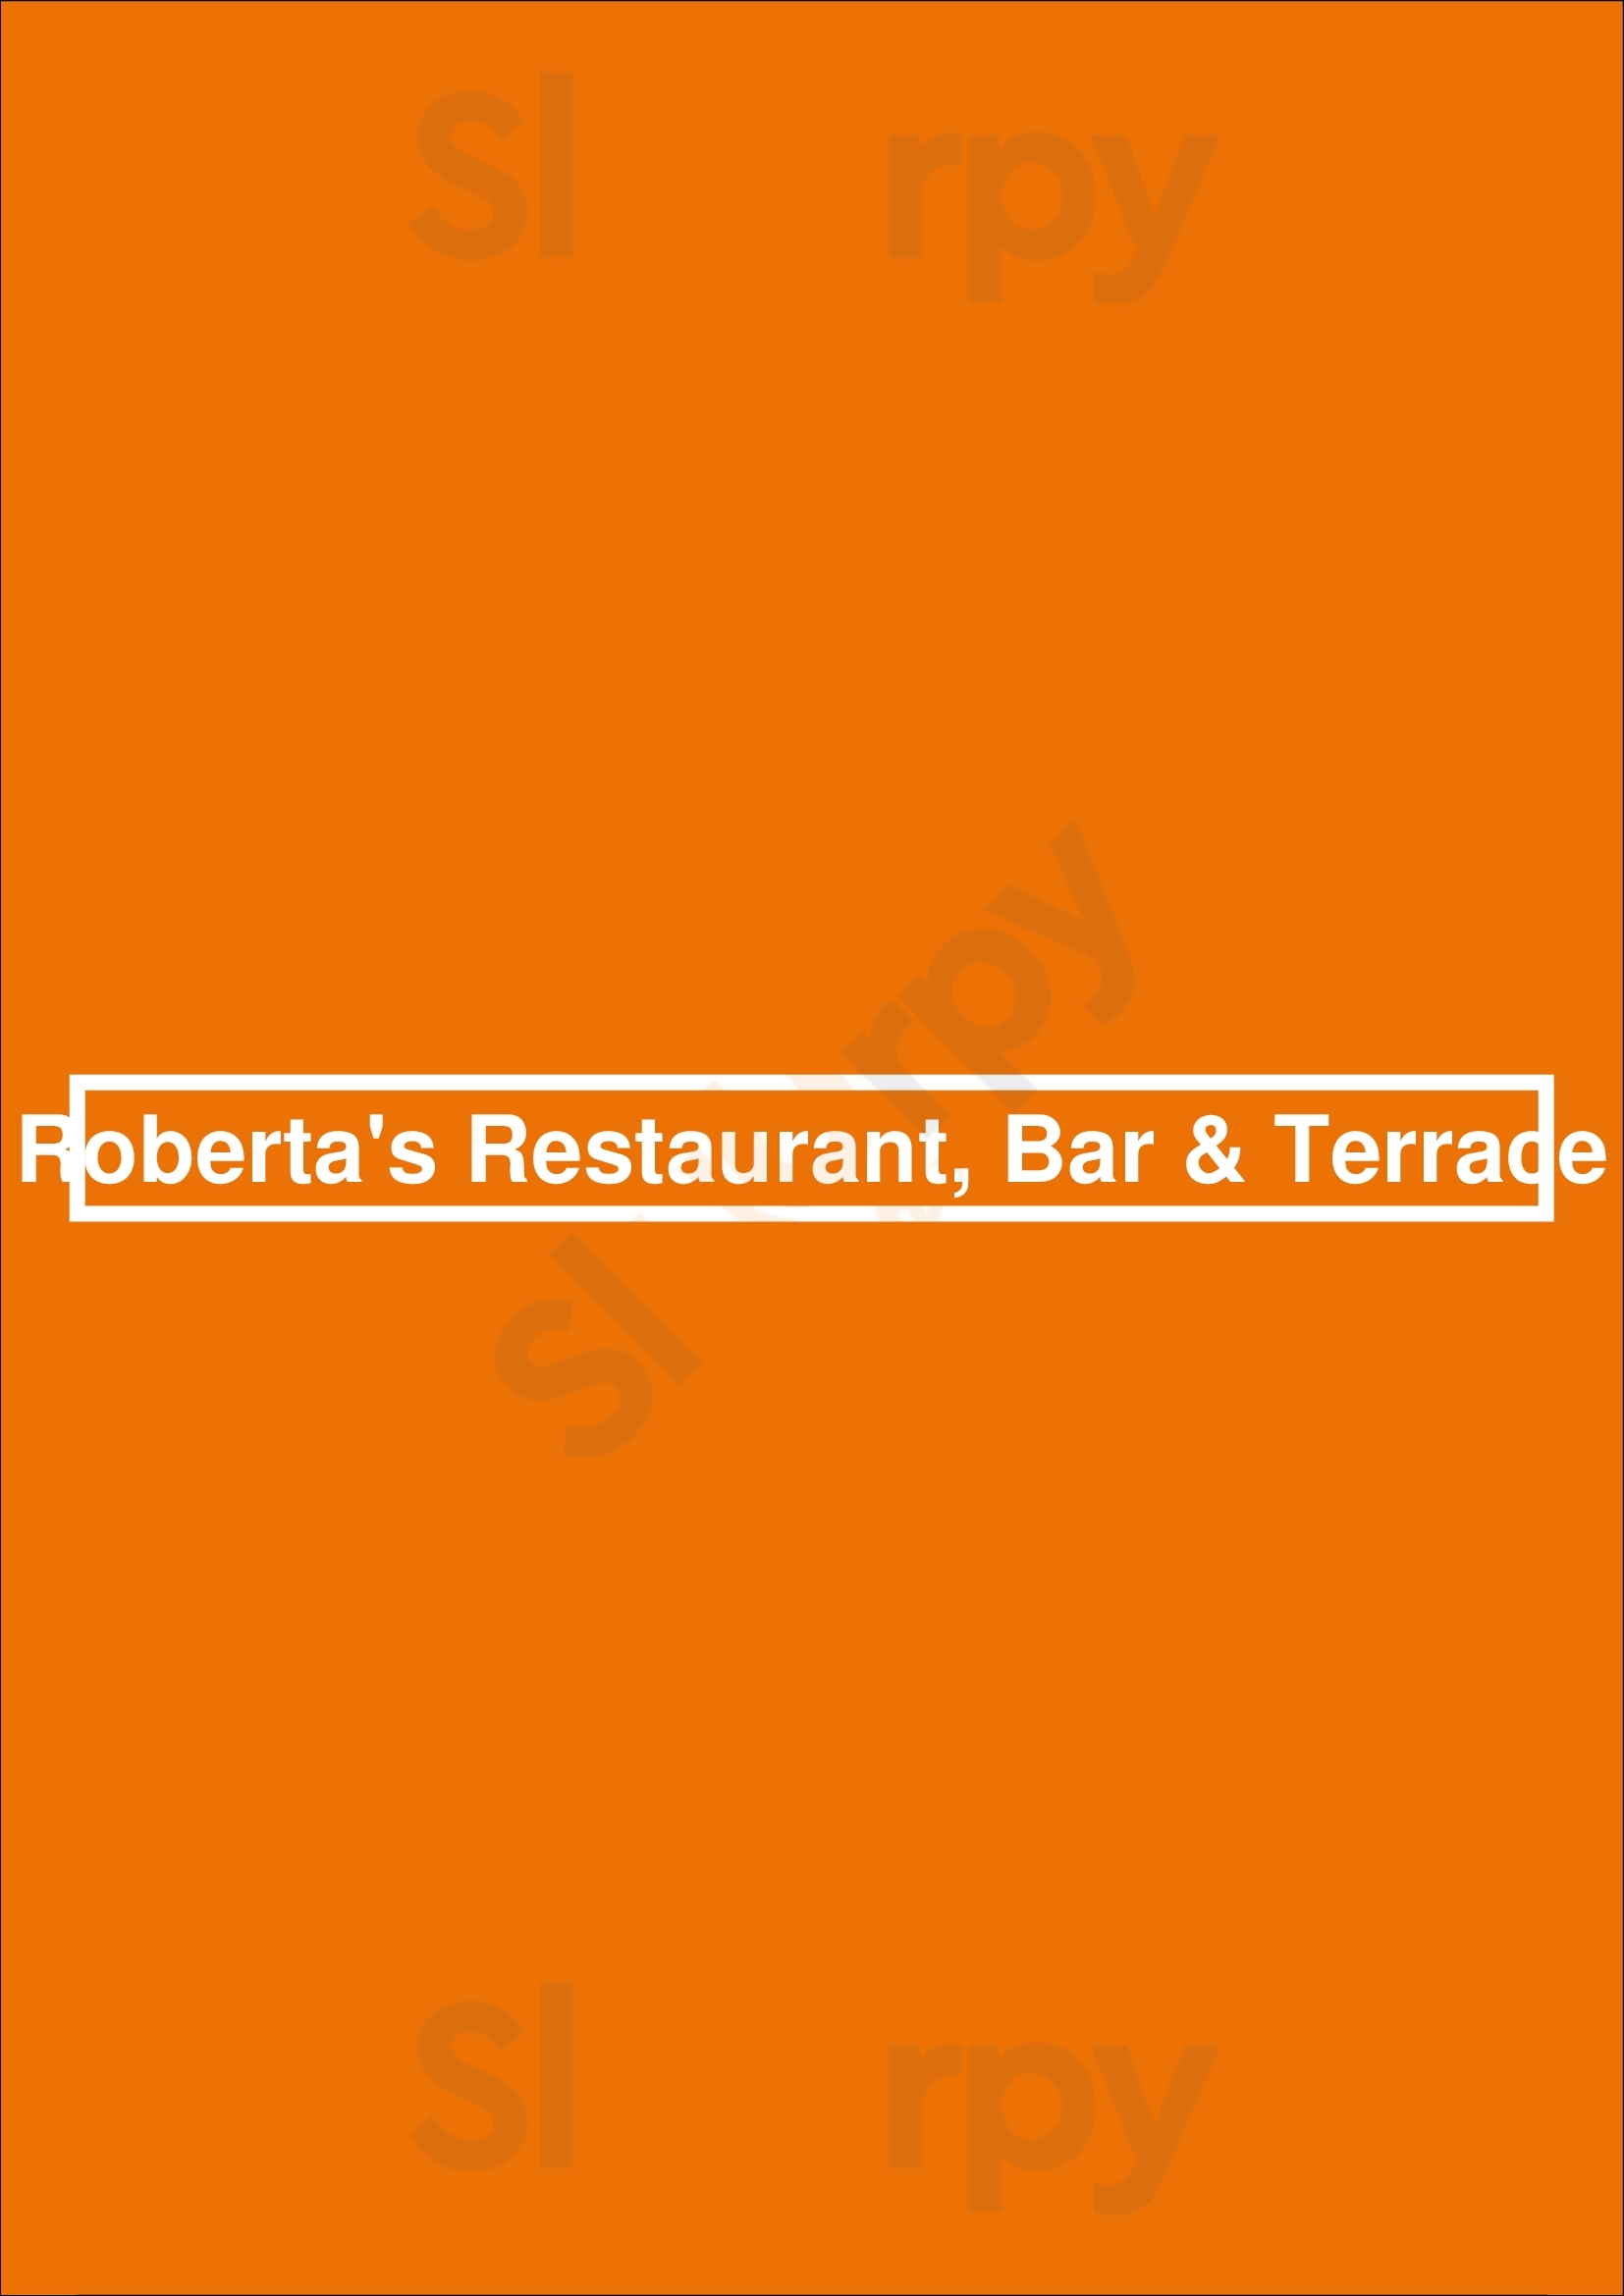 Roberta's Restaurant, Bar & Terrace Dublin Menu - 1